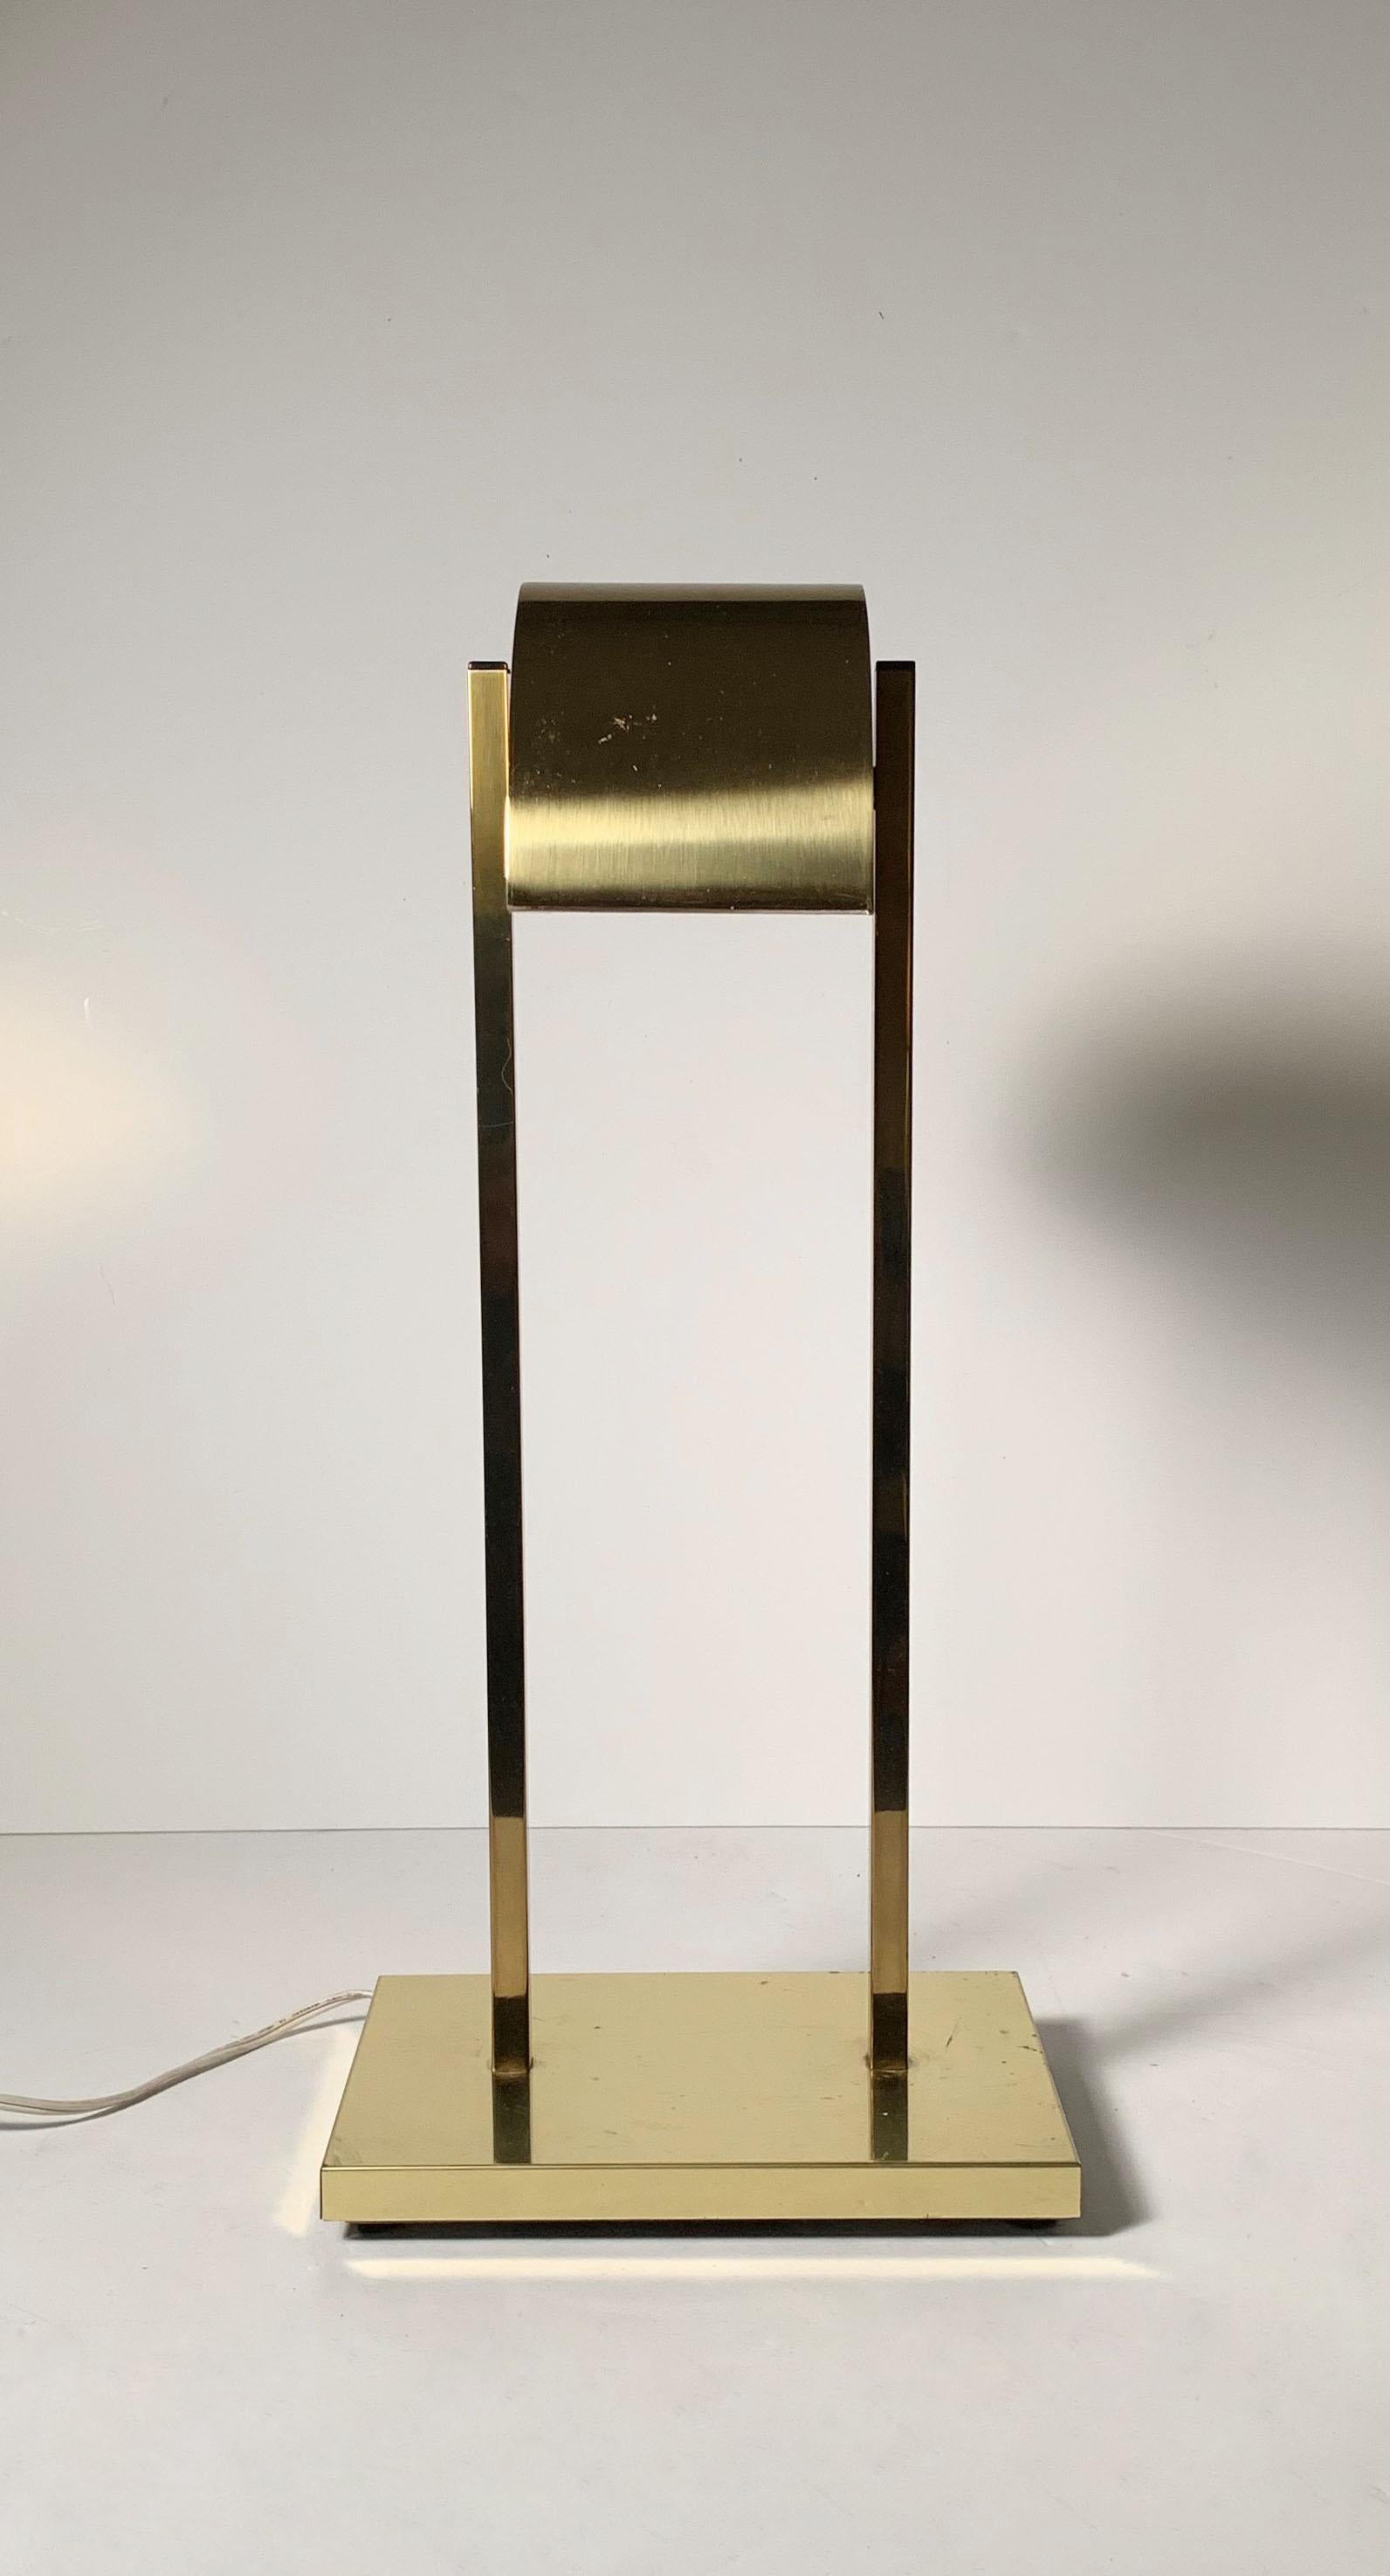 Postmodern brass demilune table / desk lamp by Kovacs, 1970s. Style of Sonneman.